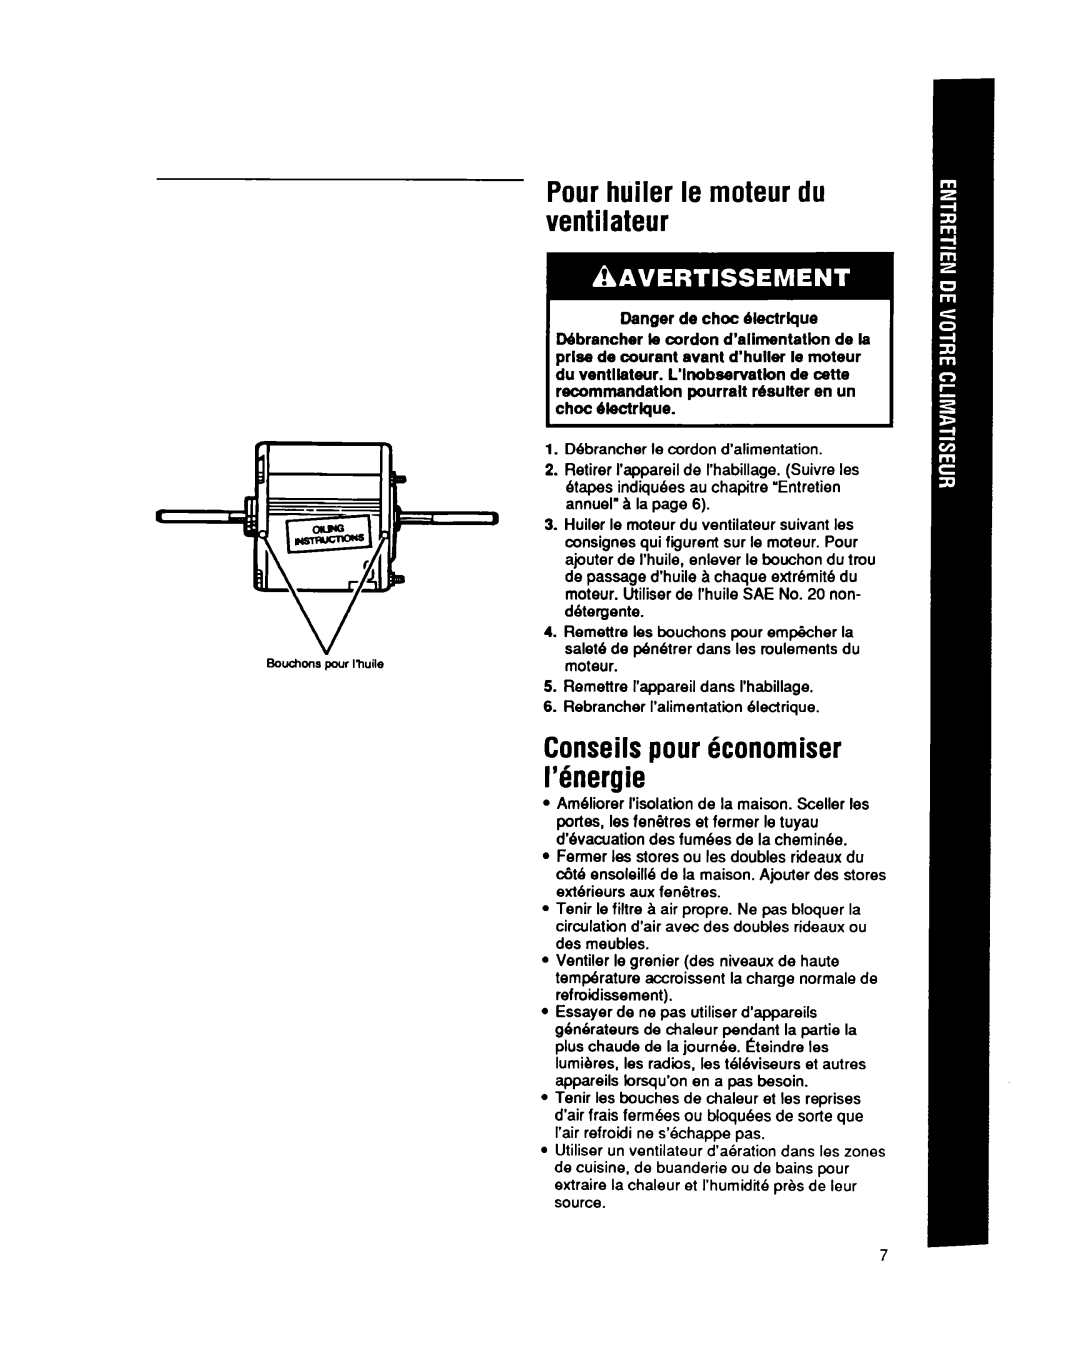 Whirlpool CA13WQ4 manual Pourhuiler le moteur du ventilateur, Conseilspour konomiser Mnergie, Danger de choc Blectrlque 